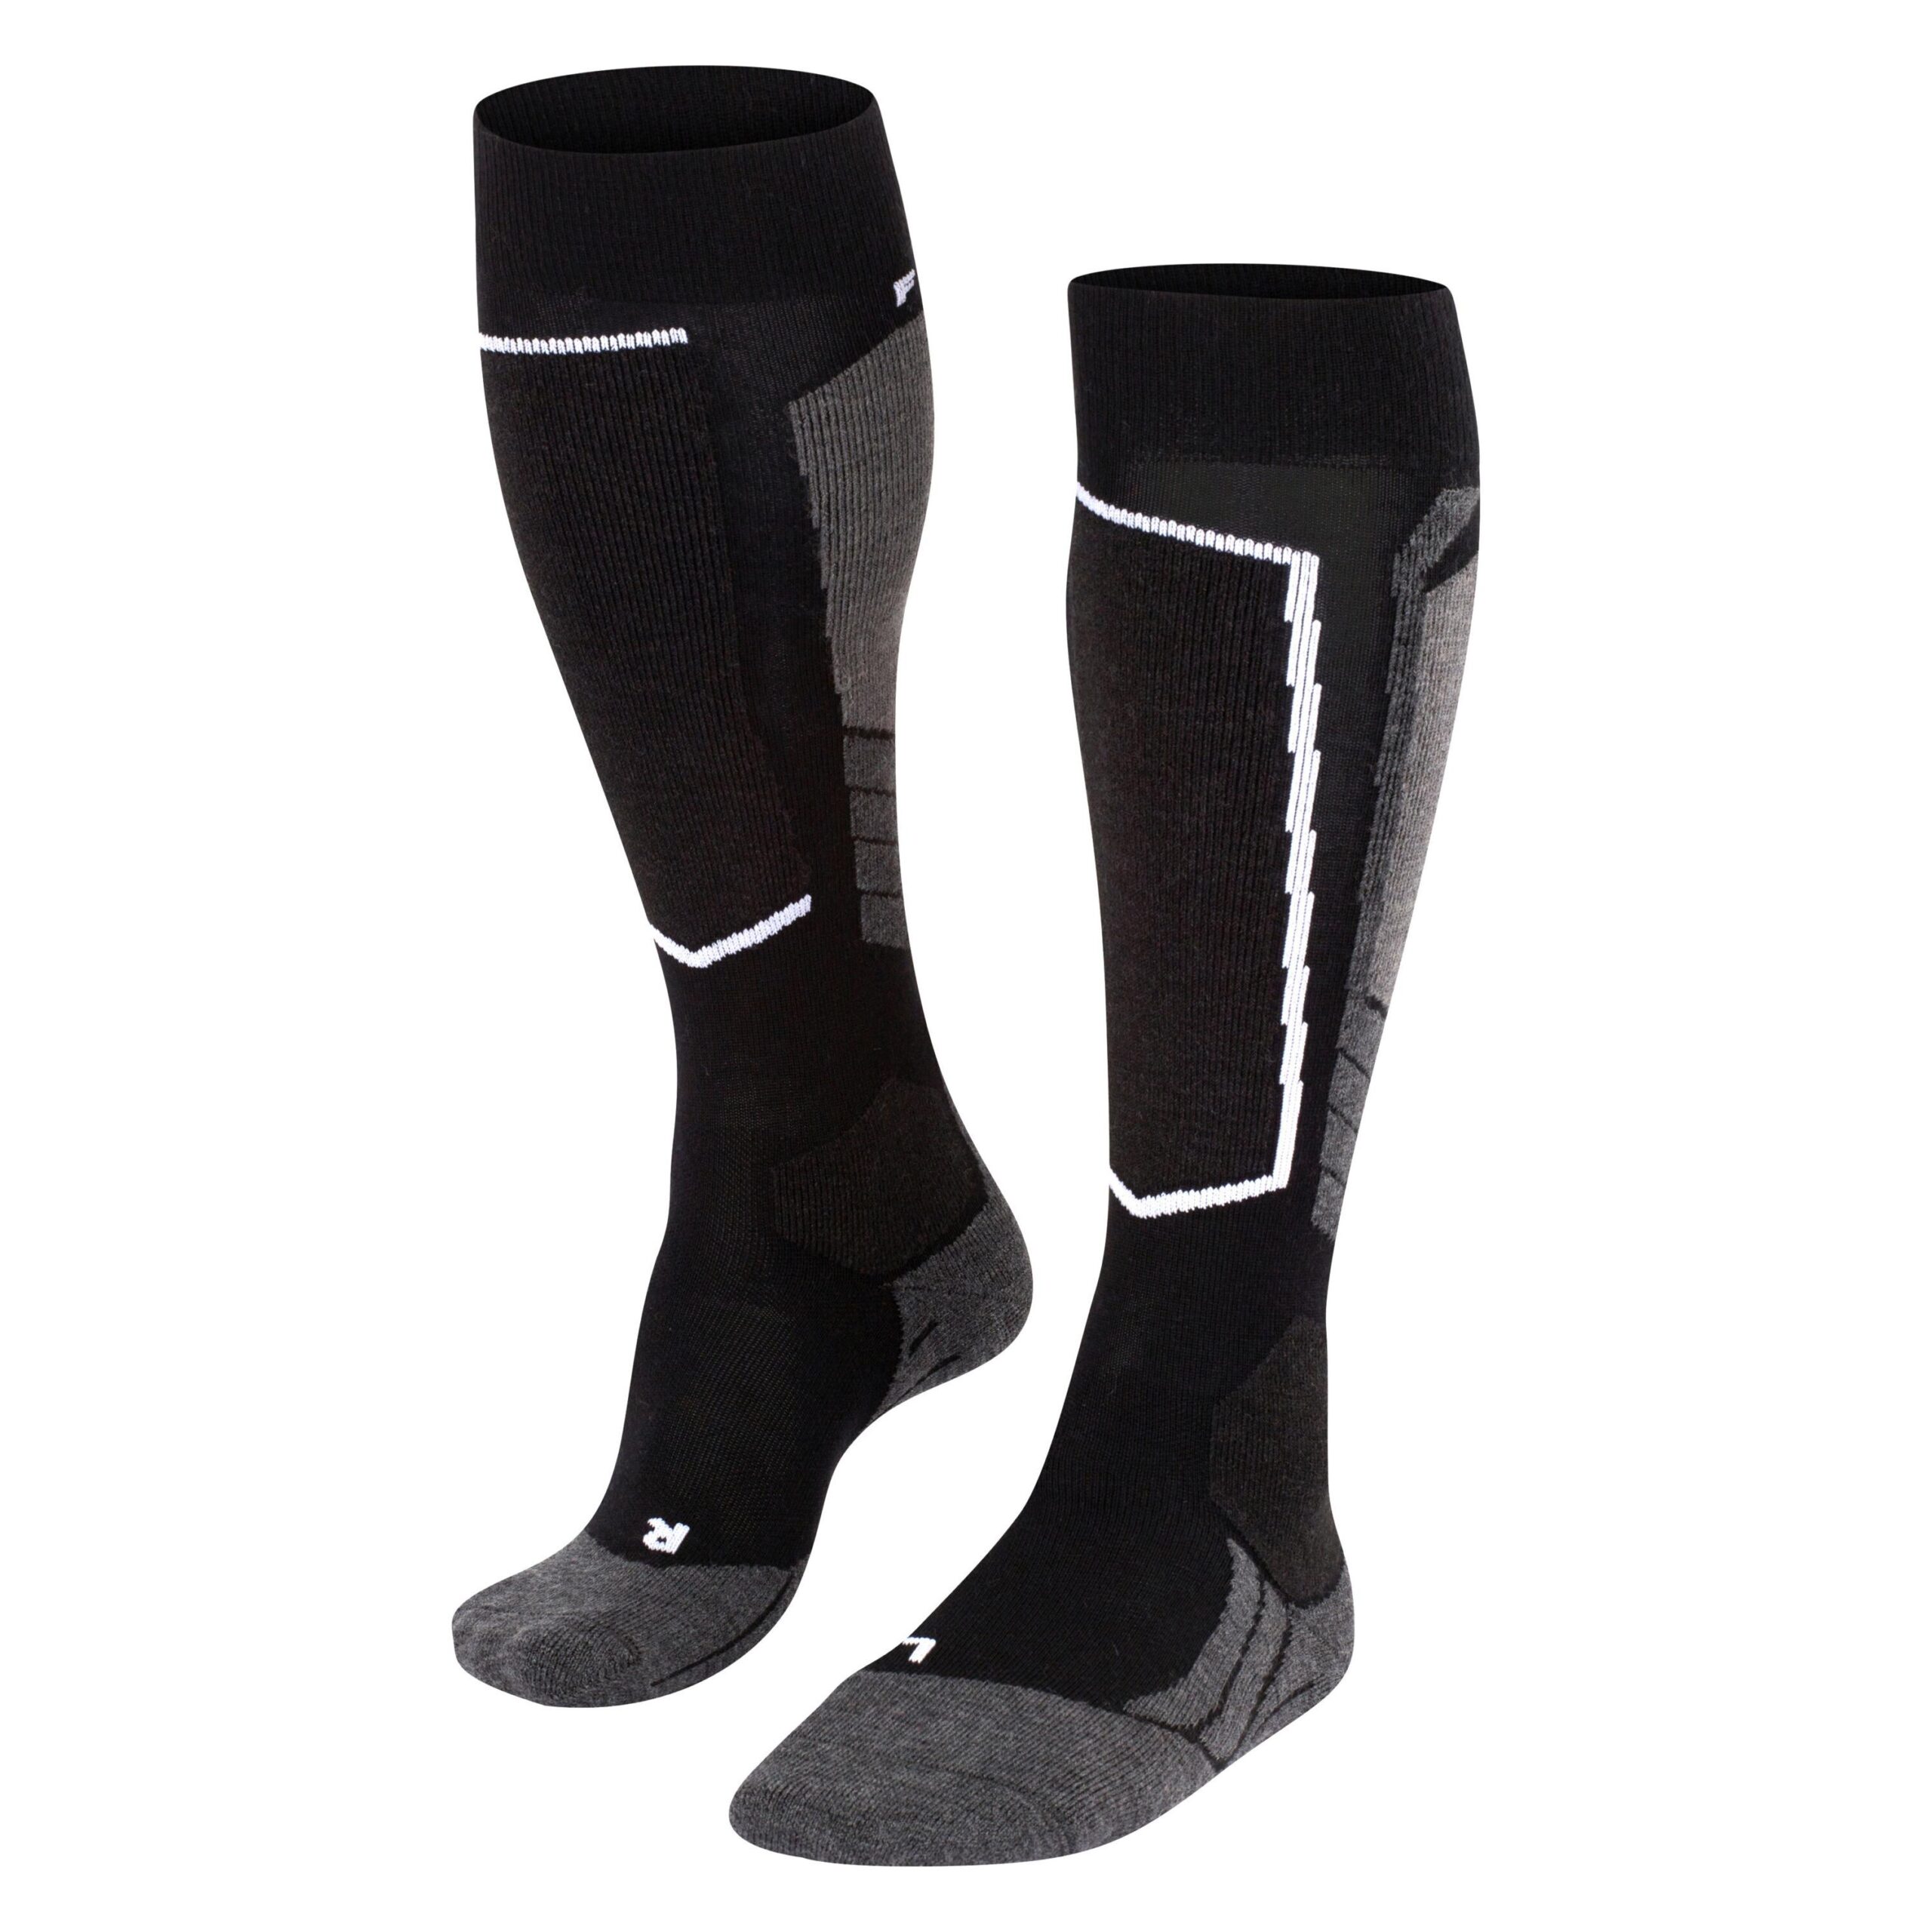 Falke SK 2 Wool Socken Damen Hersteller: Falke Bestellnummer:4004757101597